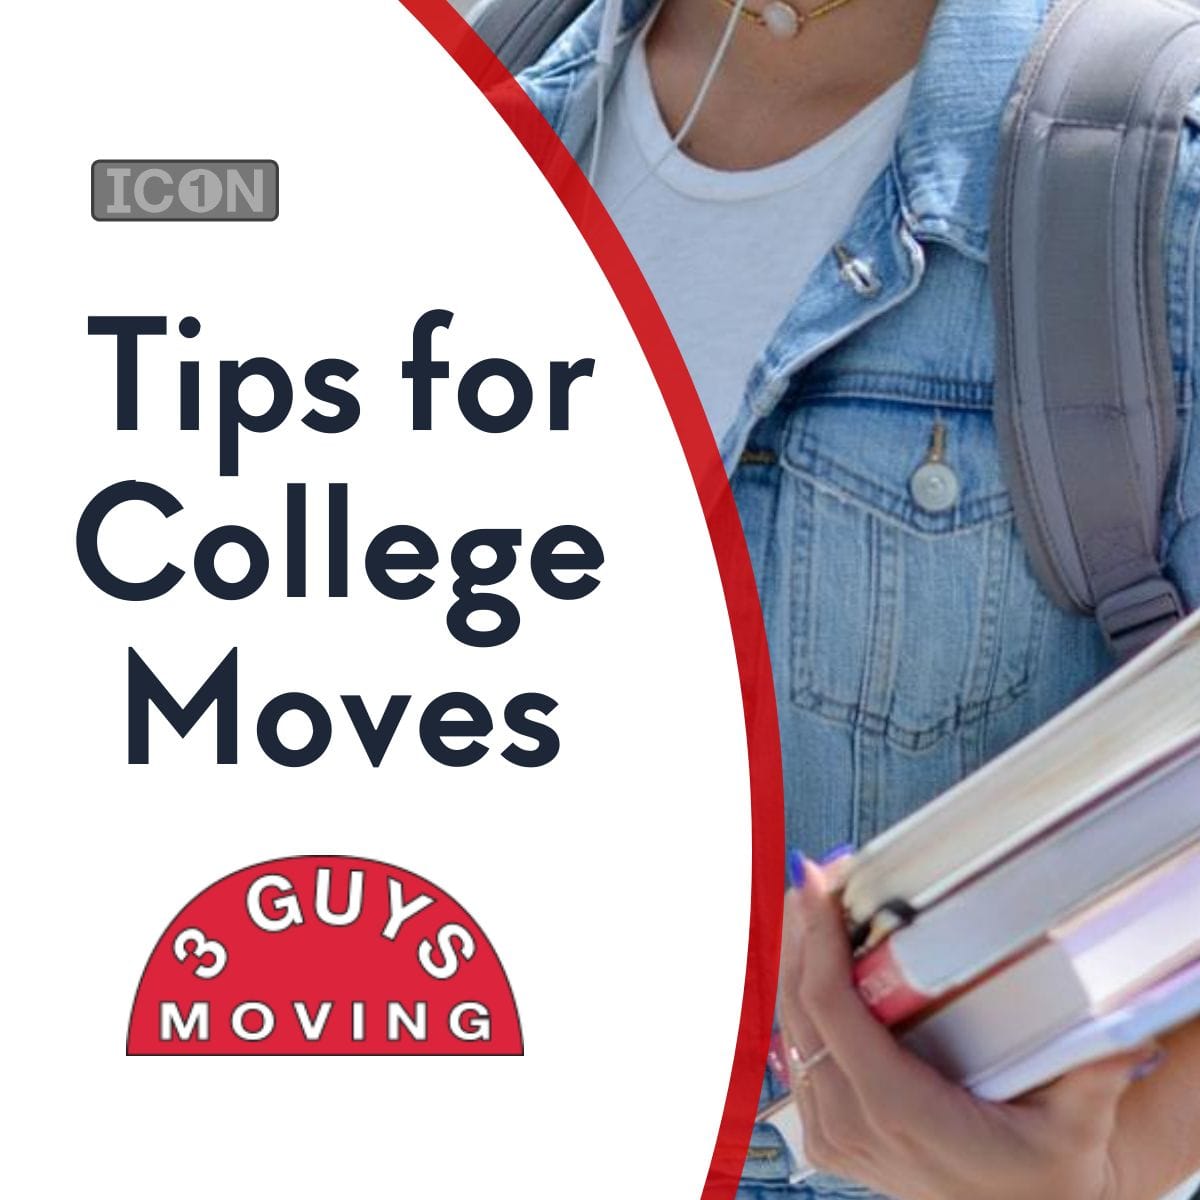 Tips for College Moves - Tips for College Moves